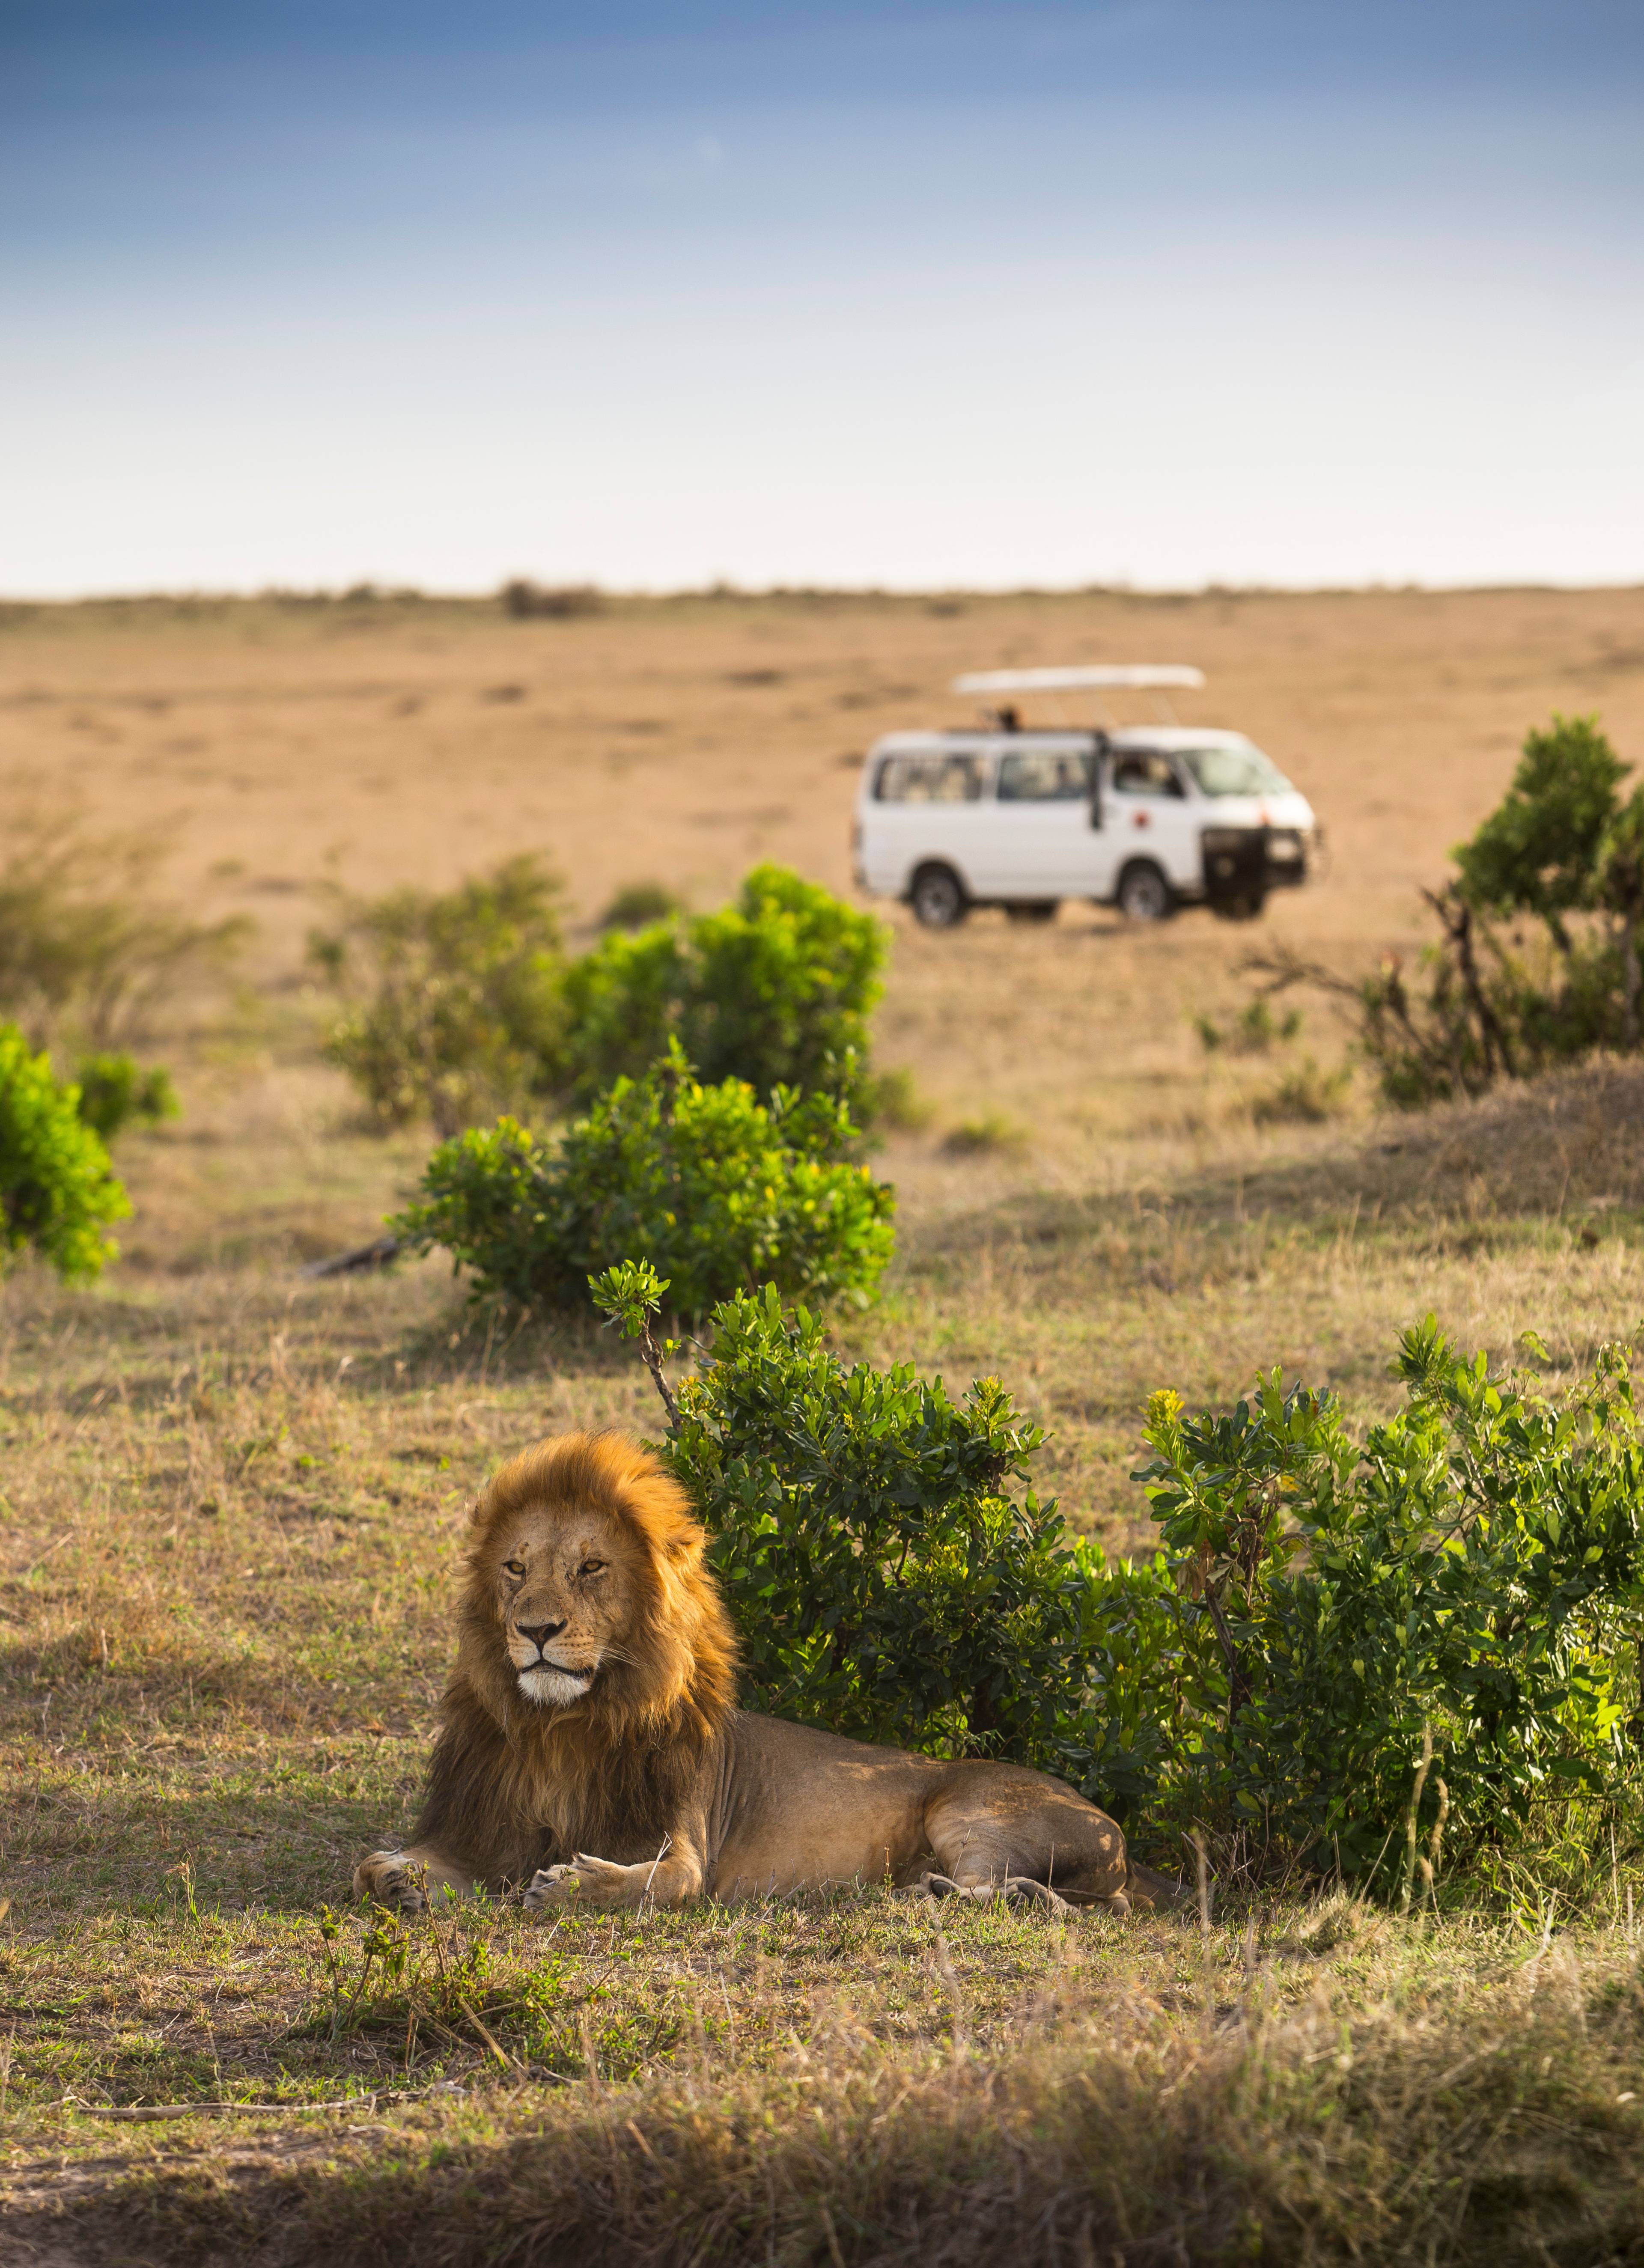 leone si riposa davanti a una jeep